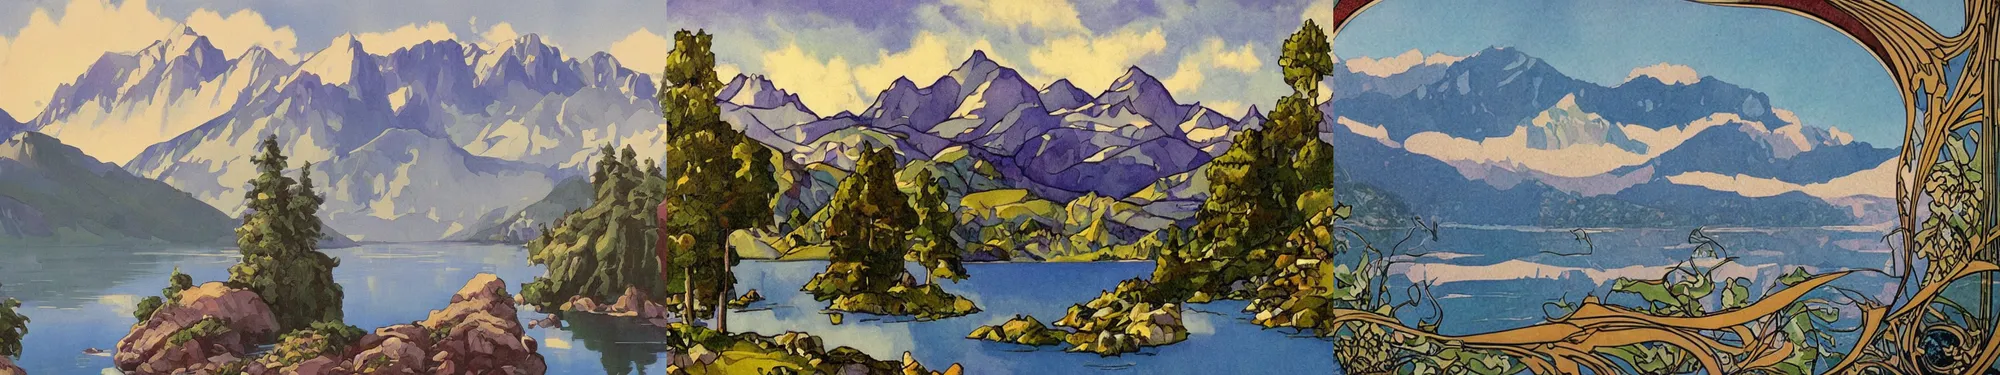 Prompt: lakeside mountains, art nouveau